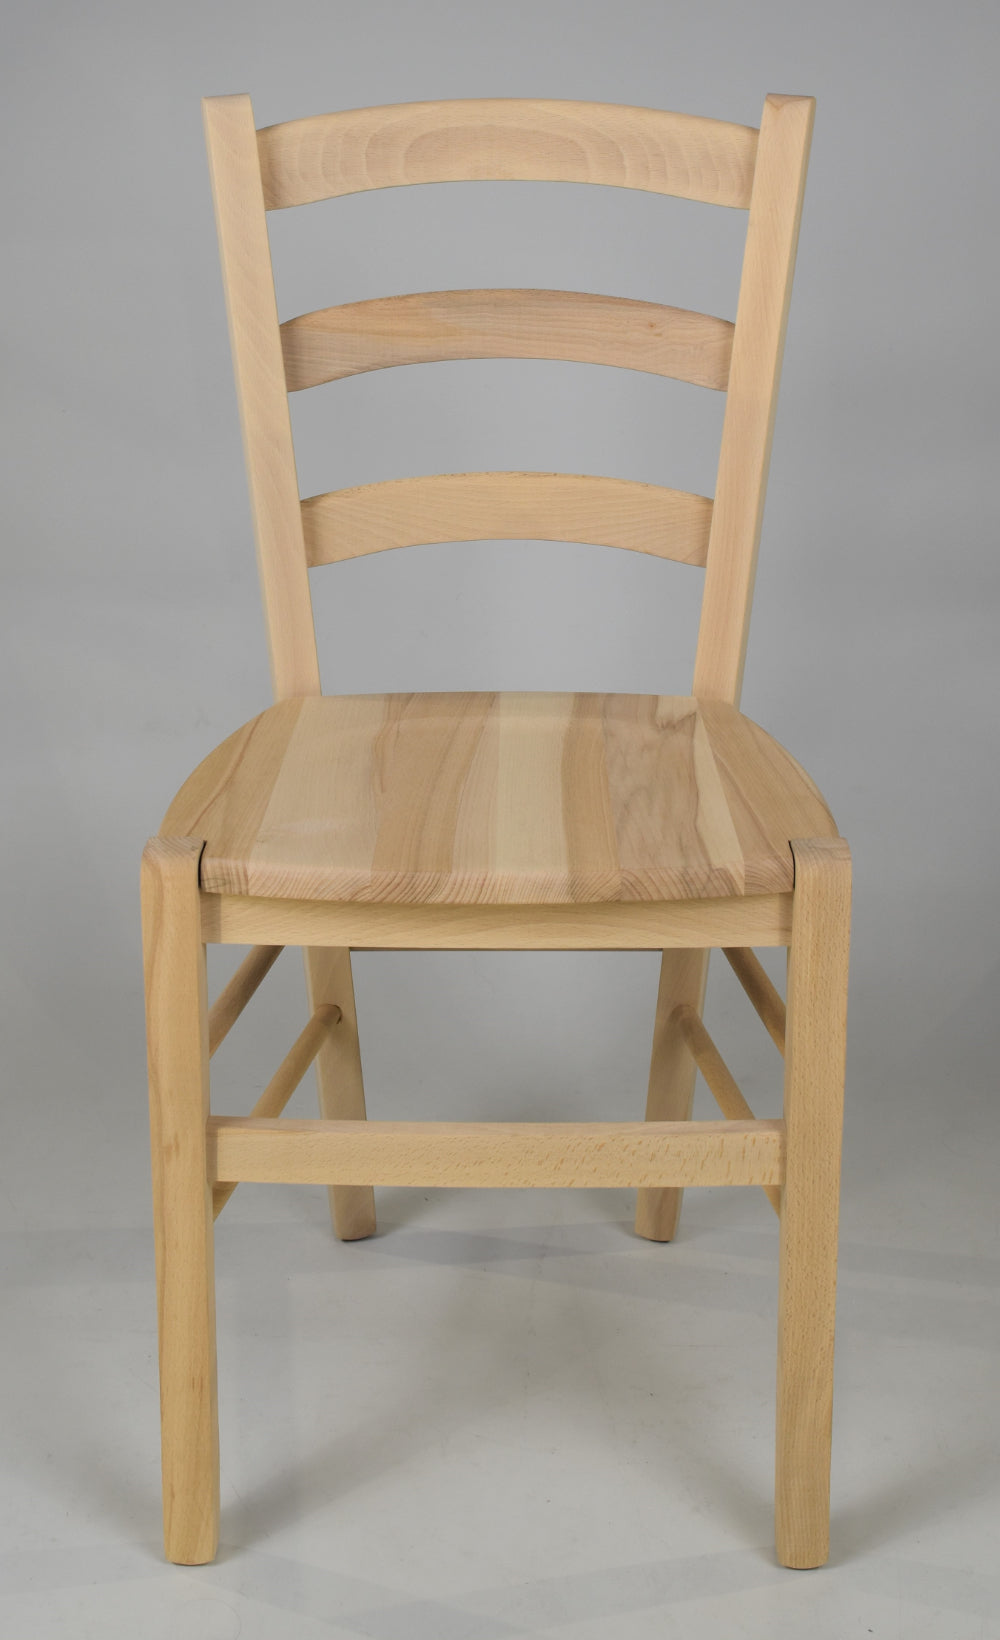 Tommychairs - Set 4 sillas de Cocina y Comedor  Venezia, estructura en madera de haya lijada, no tratada, 100% natural y asiento en madera